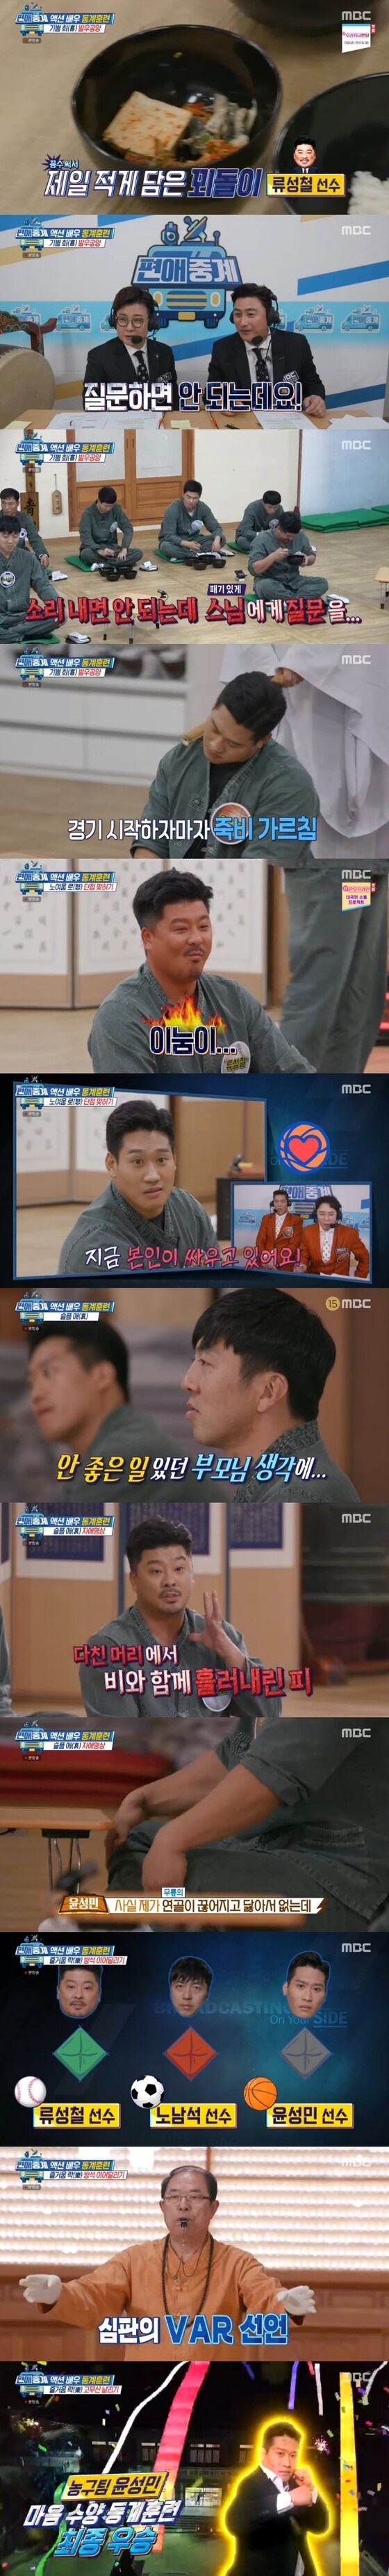 MBC '편애중계' 캡처 © 뉴스1